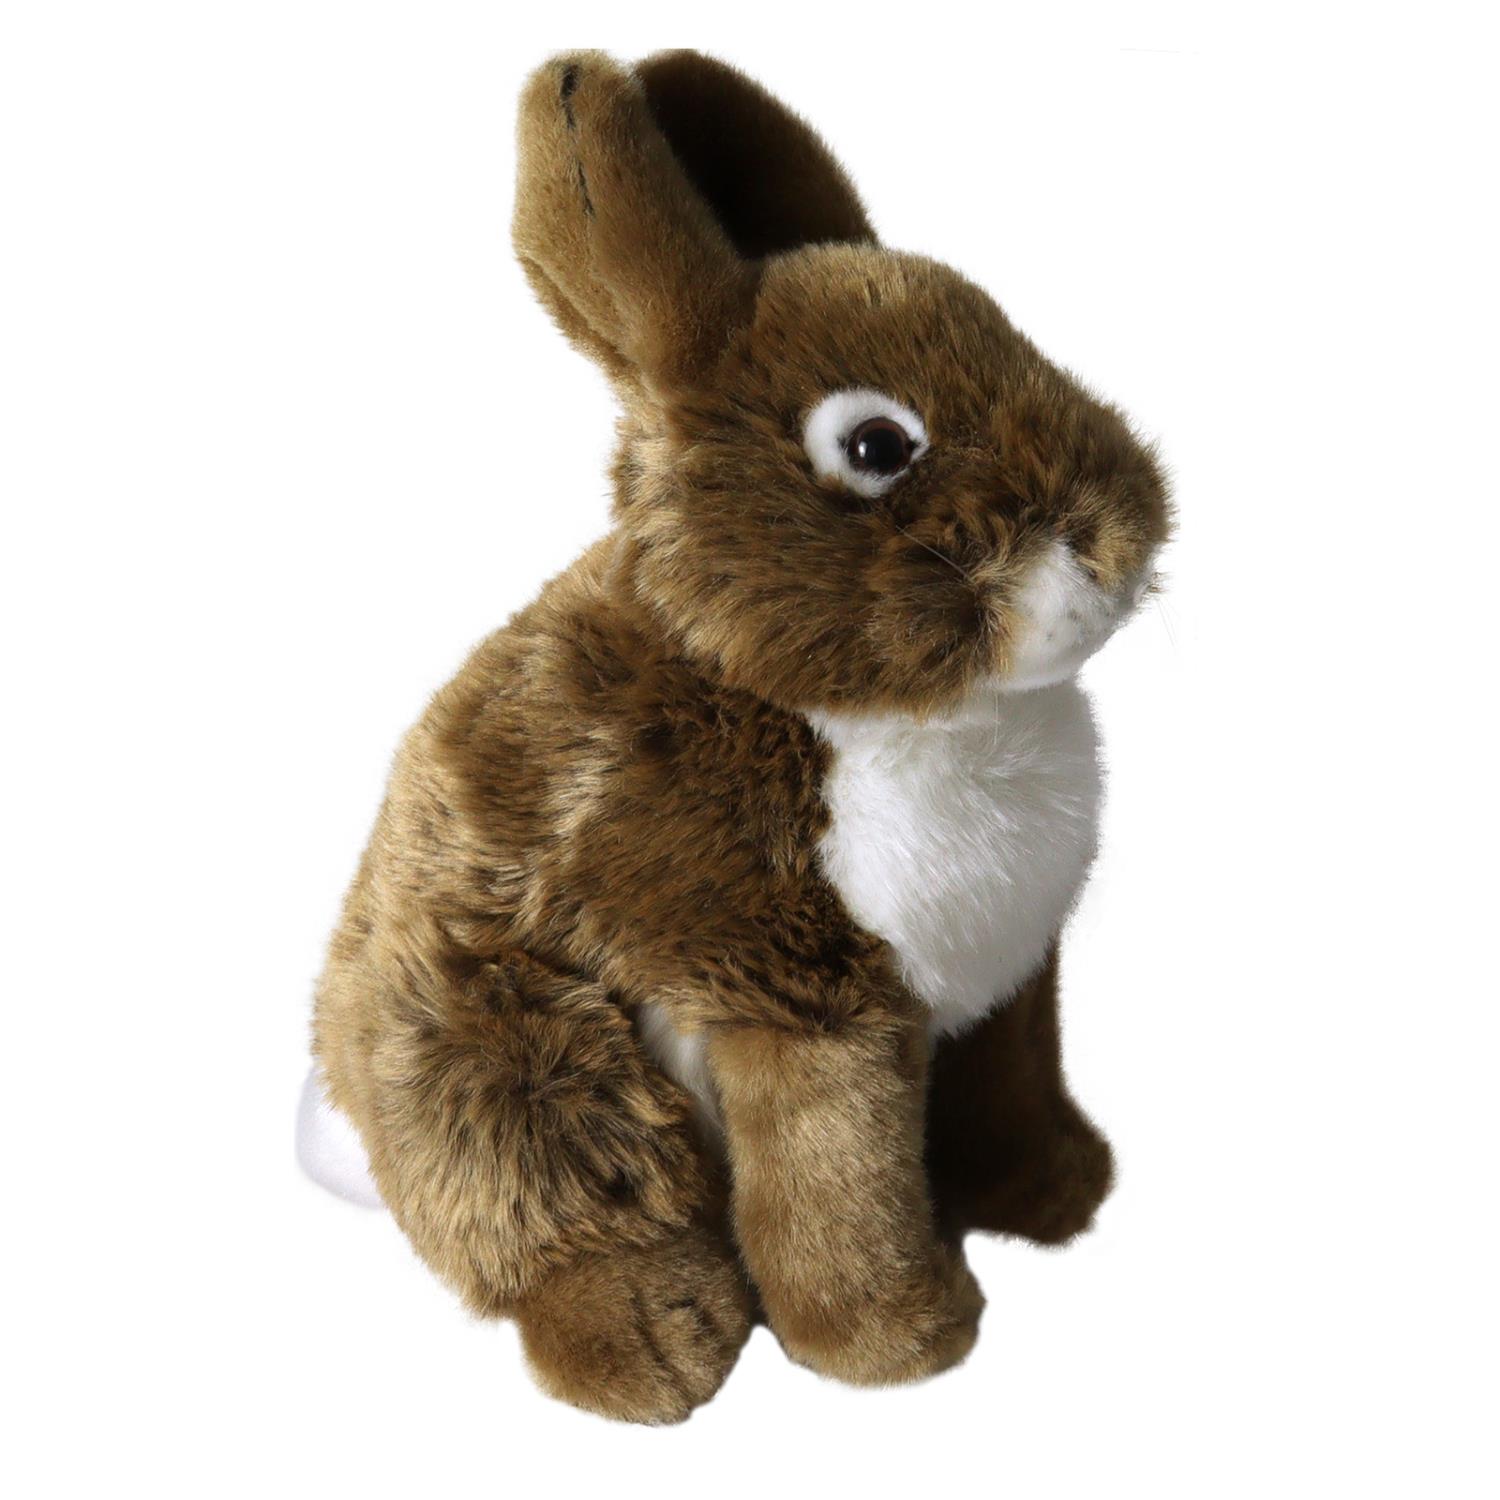 Hare bamse liten (AKAH)